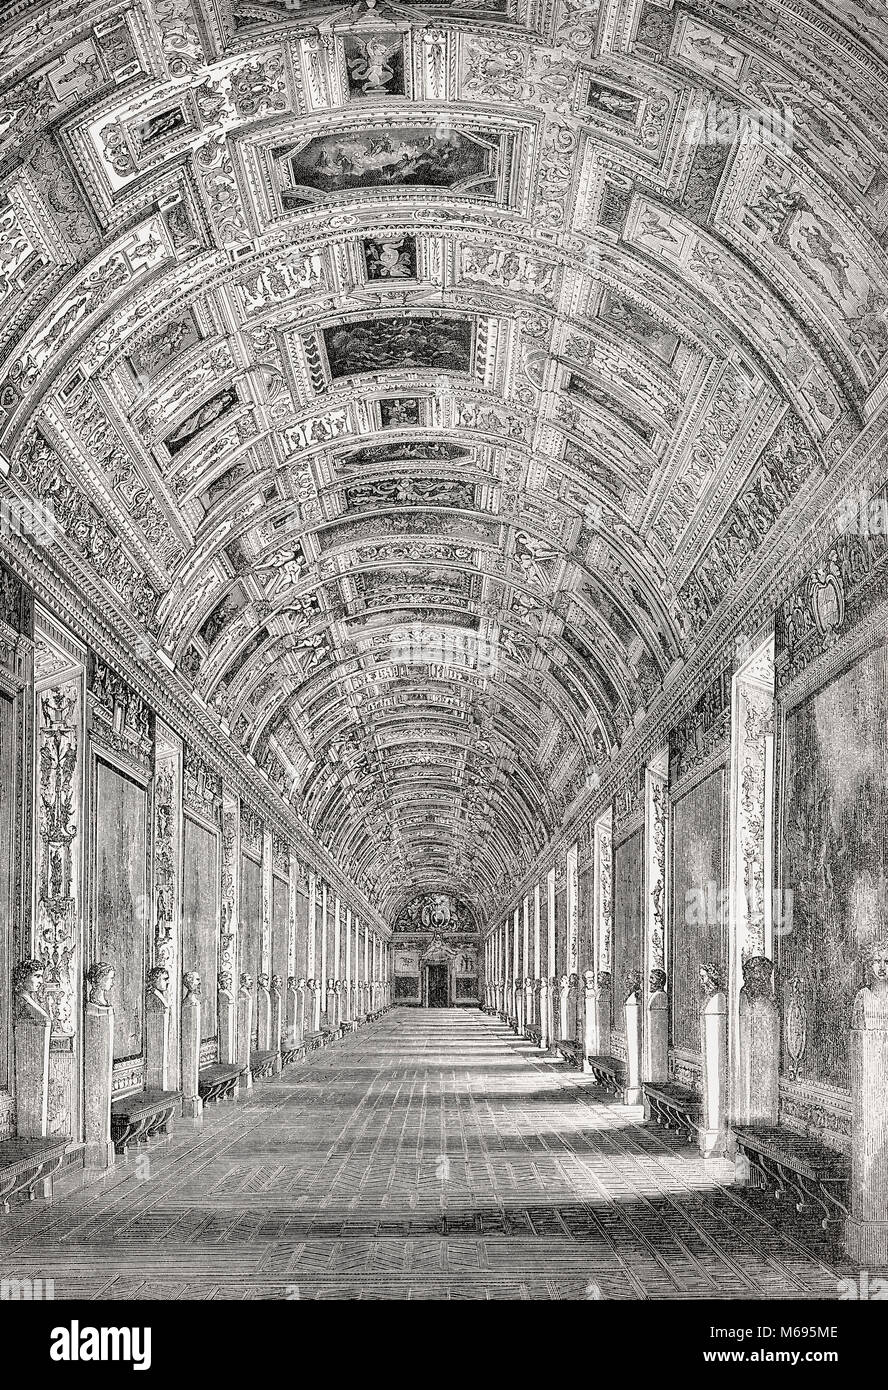 La Galerie de cartes, Musées du Vatican, Vatican, Rome, Italie, 19e siècle Banque D'Images